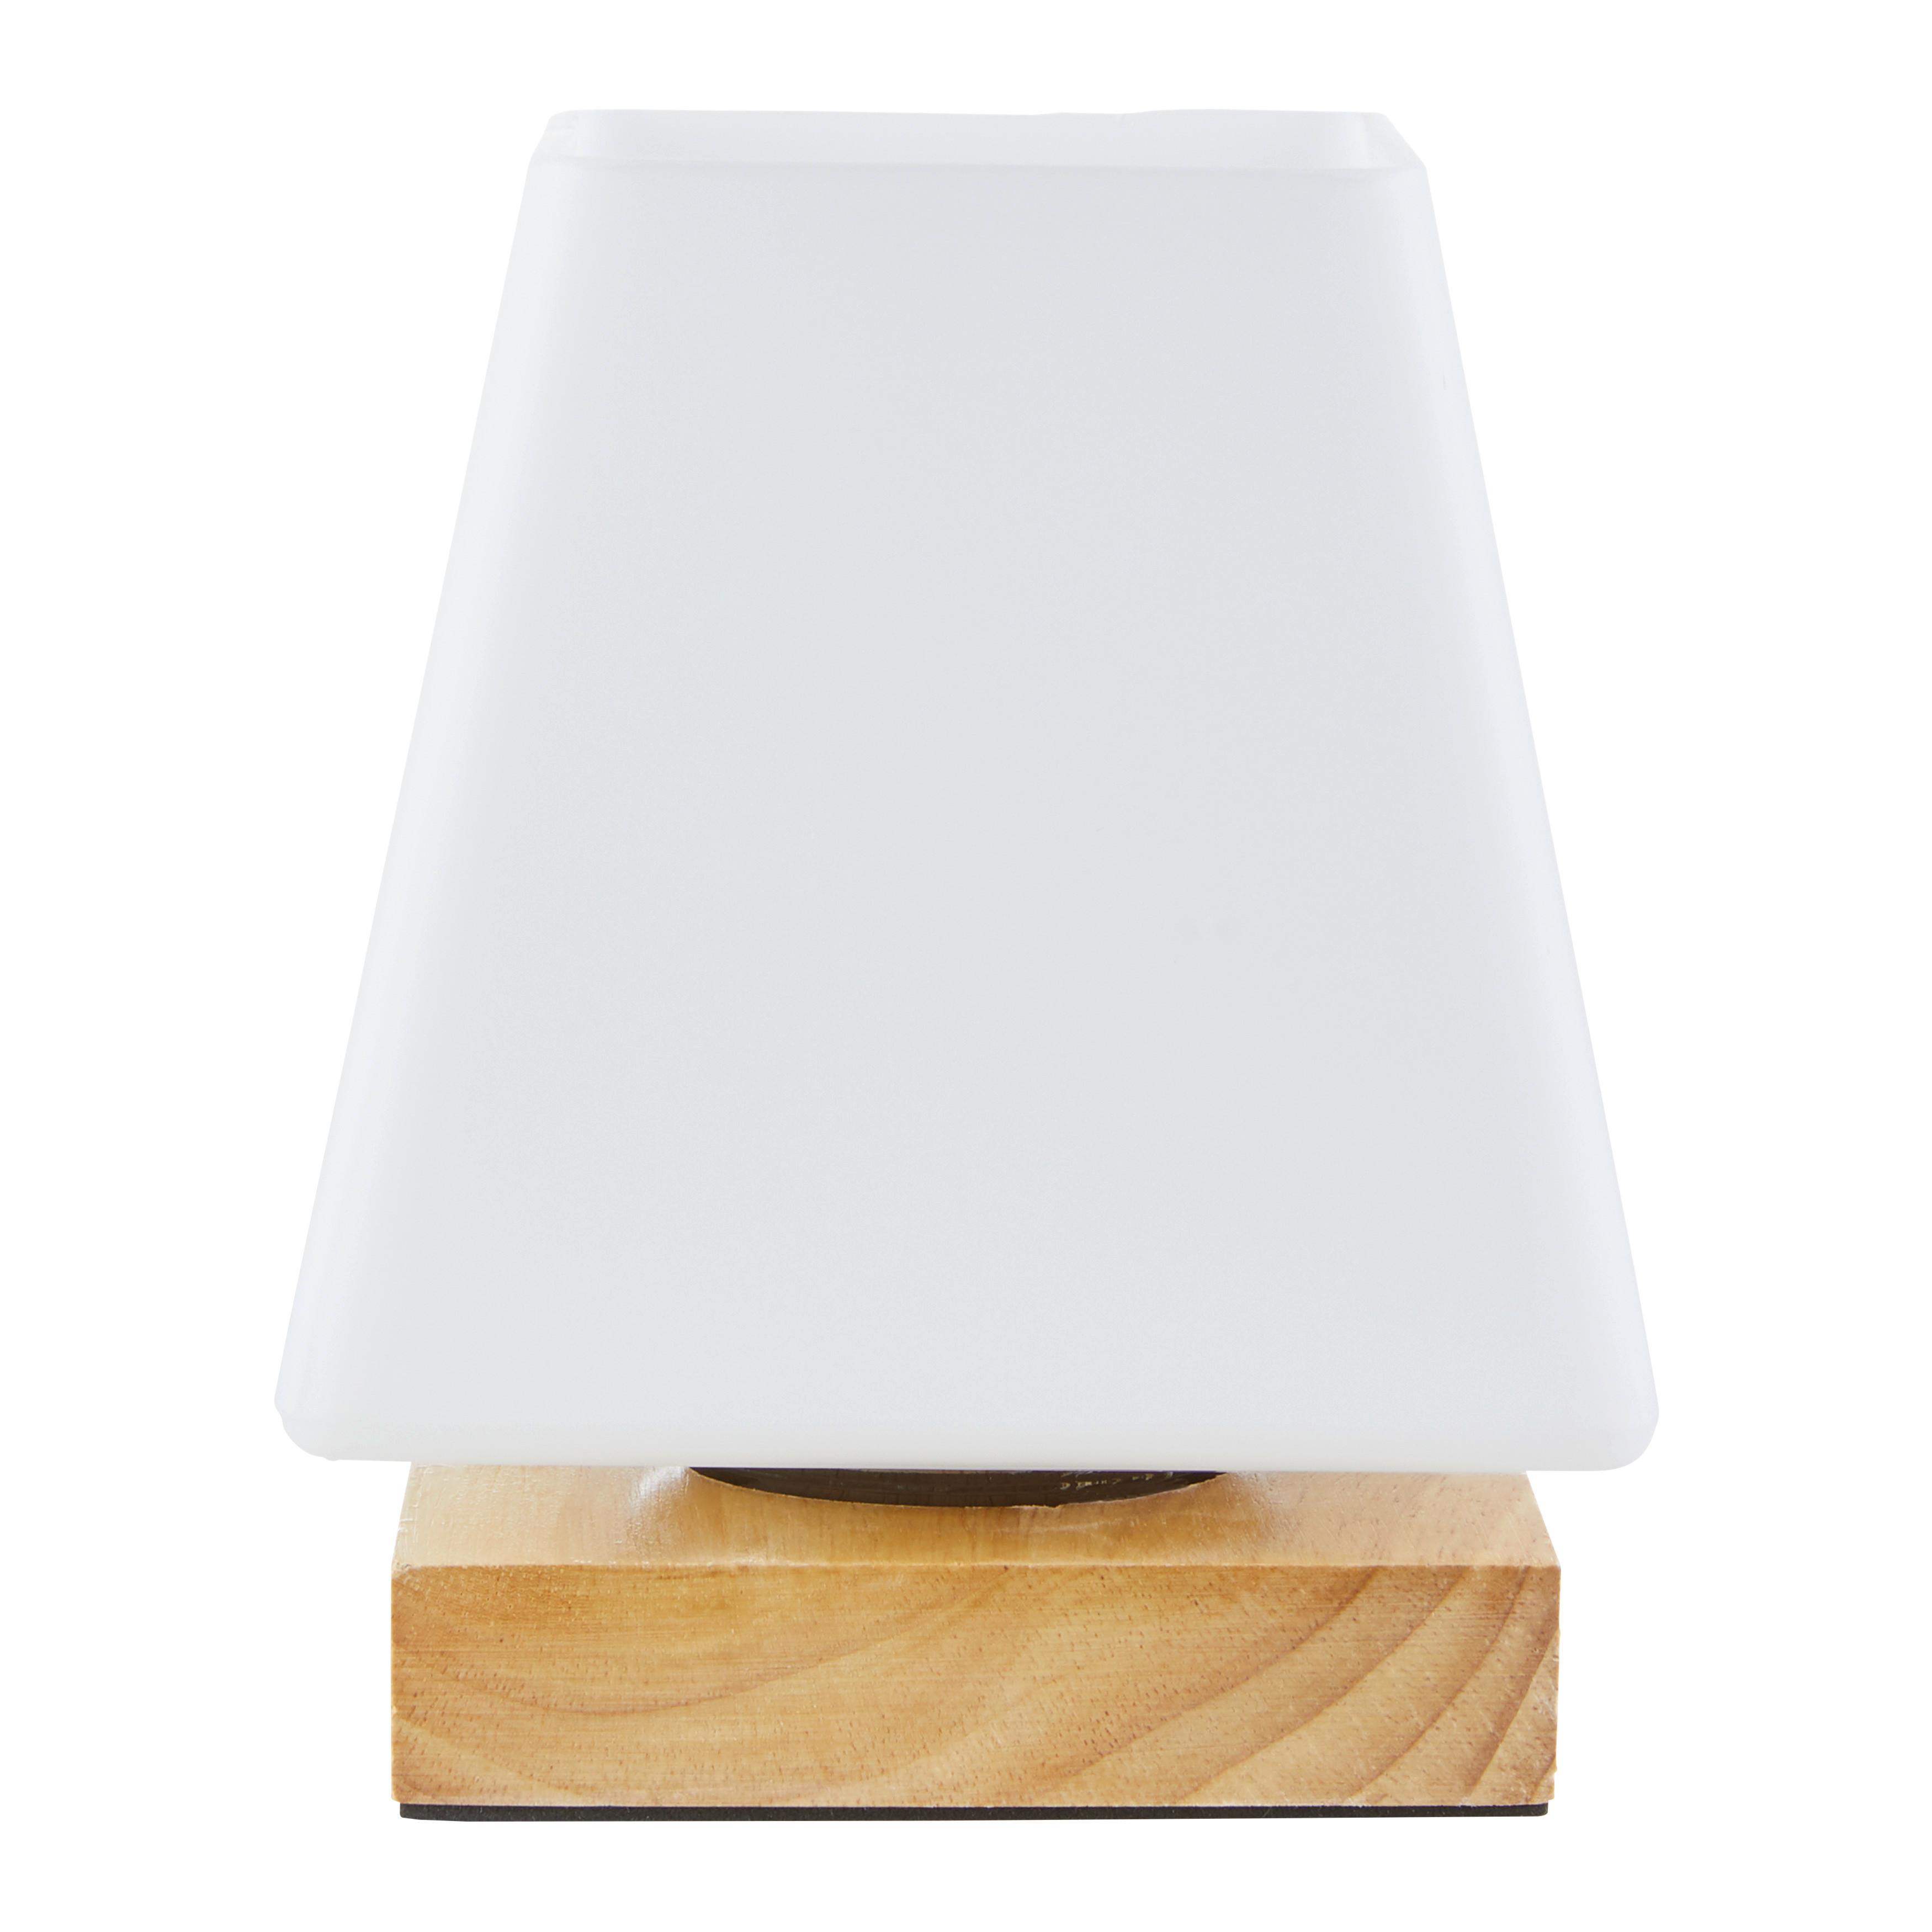 Asztali Lámpa Holly - Natúr, modern, Üveg/Fa (14/17,3cm) - Modern Living